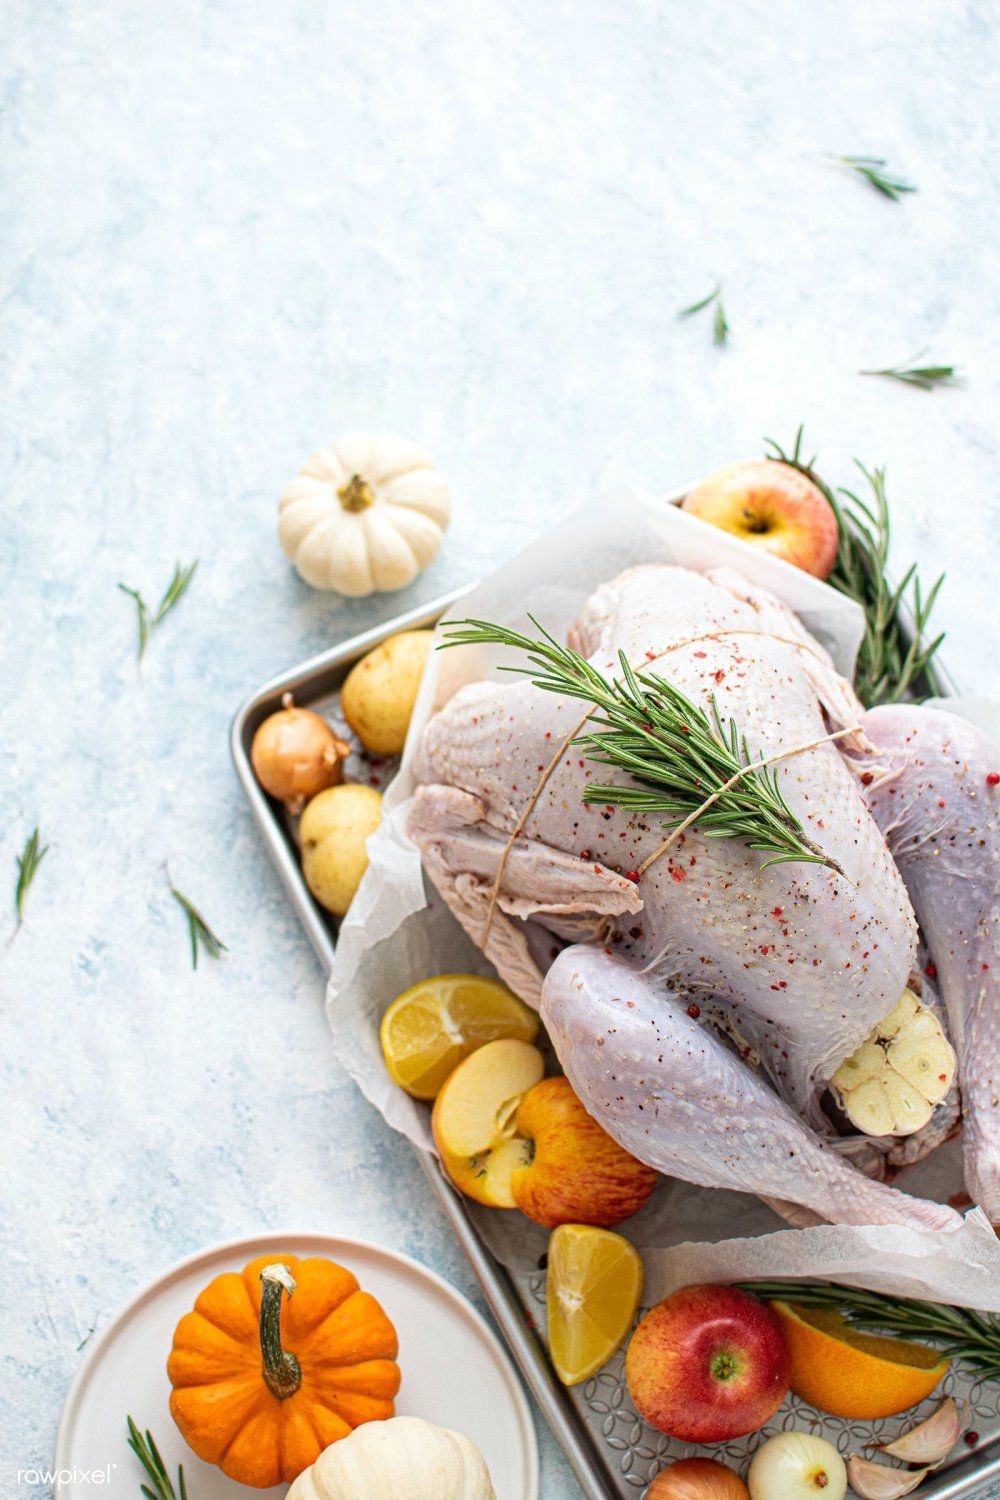 Cooper's Thanksgiving Turkeys! 2022 (Online Farmstand)